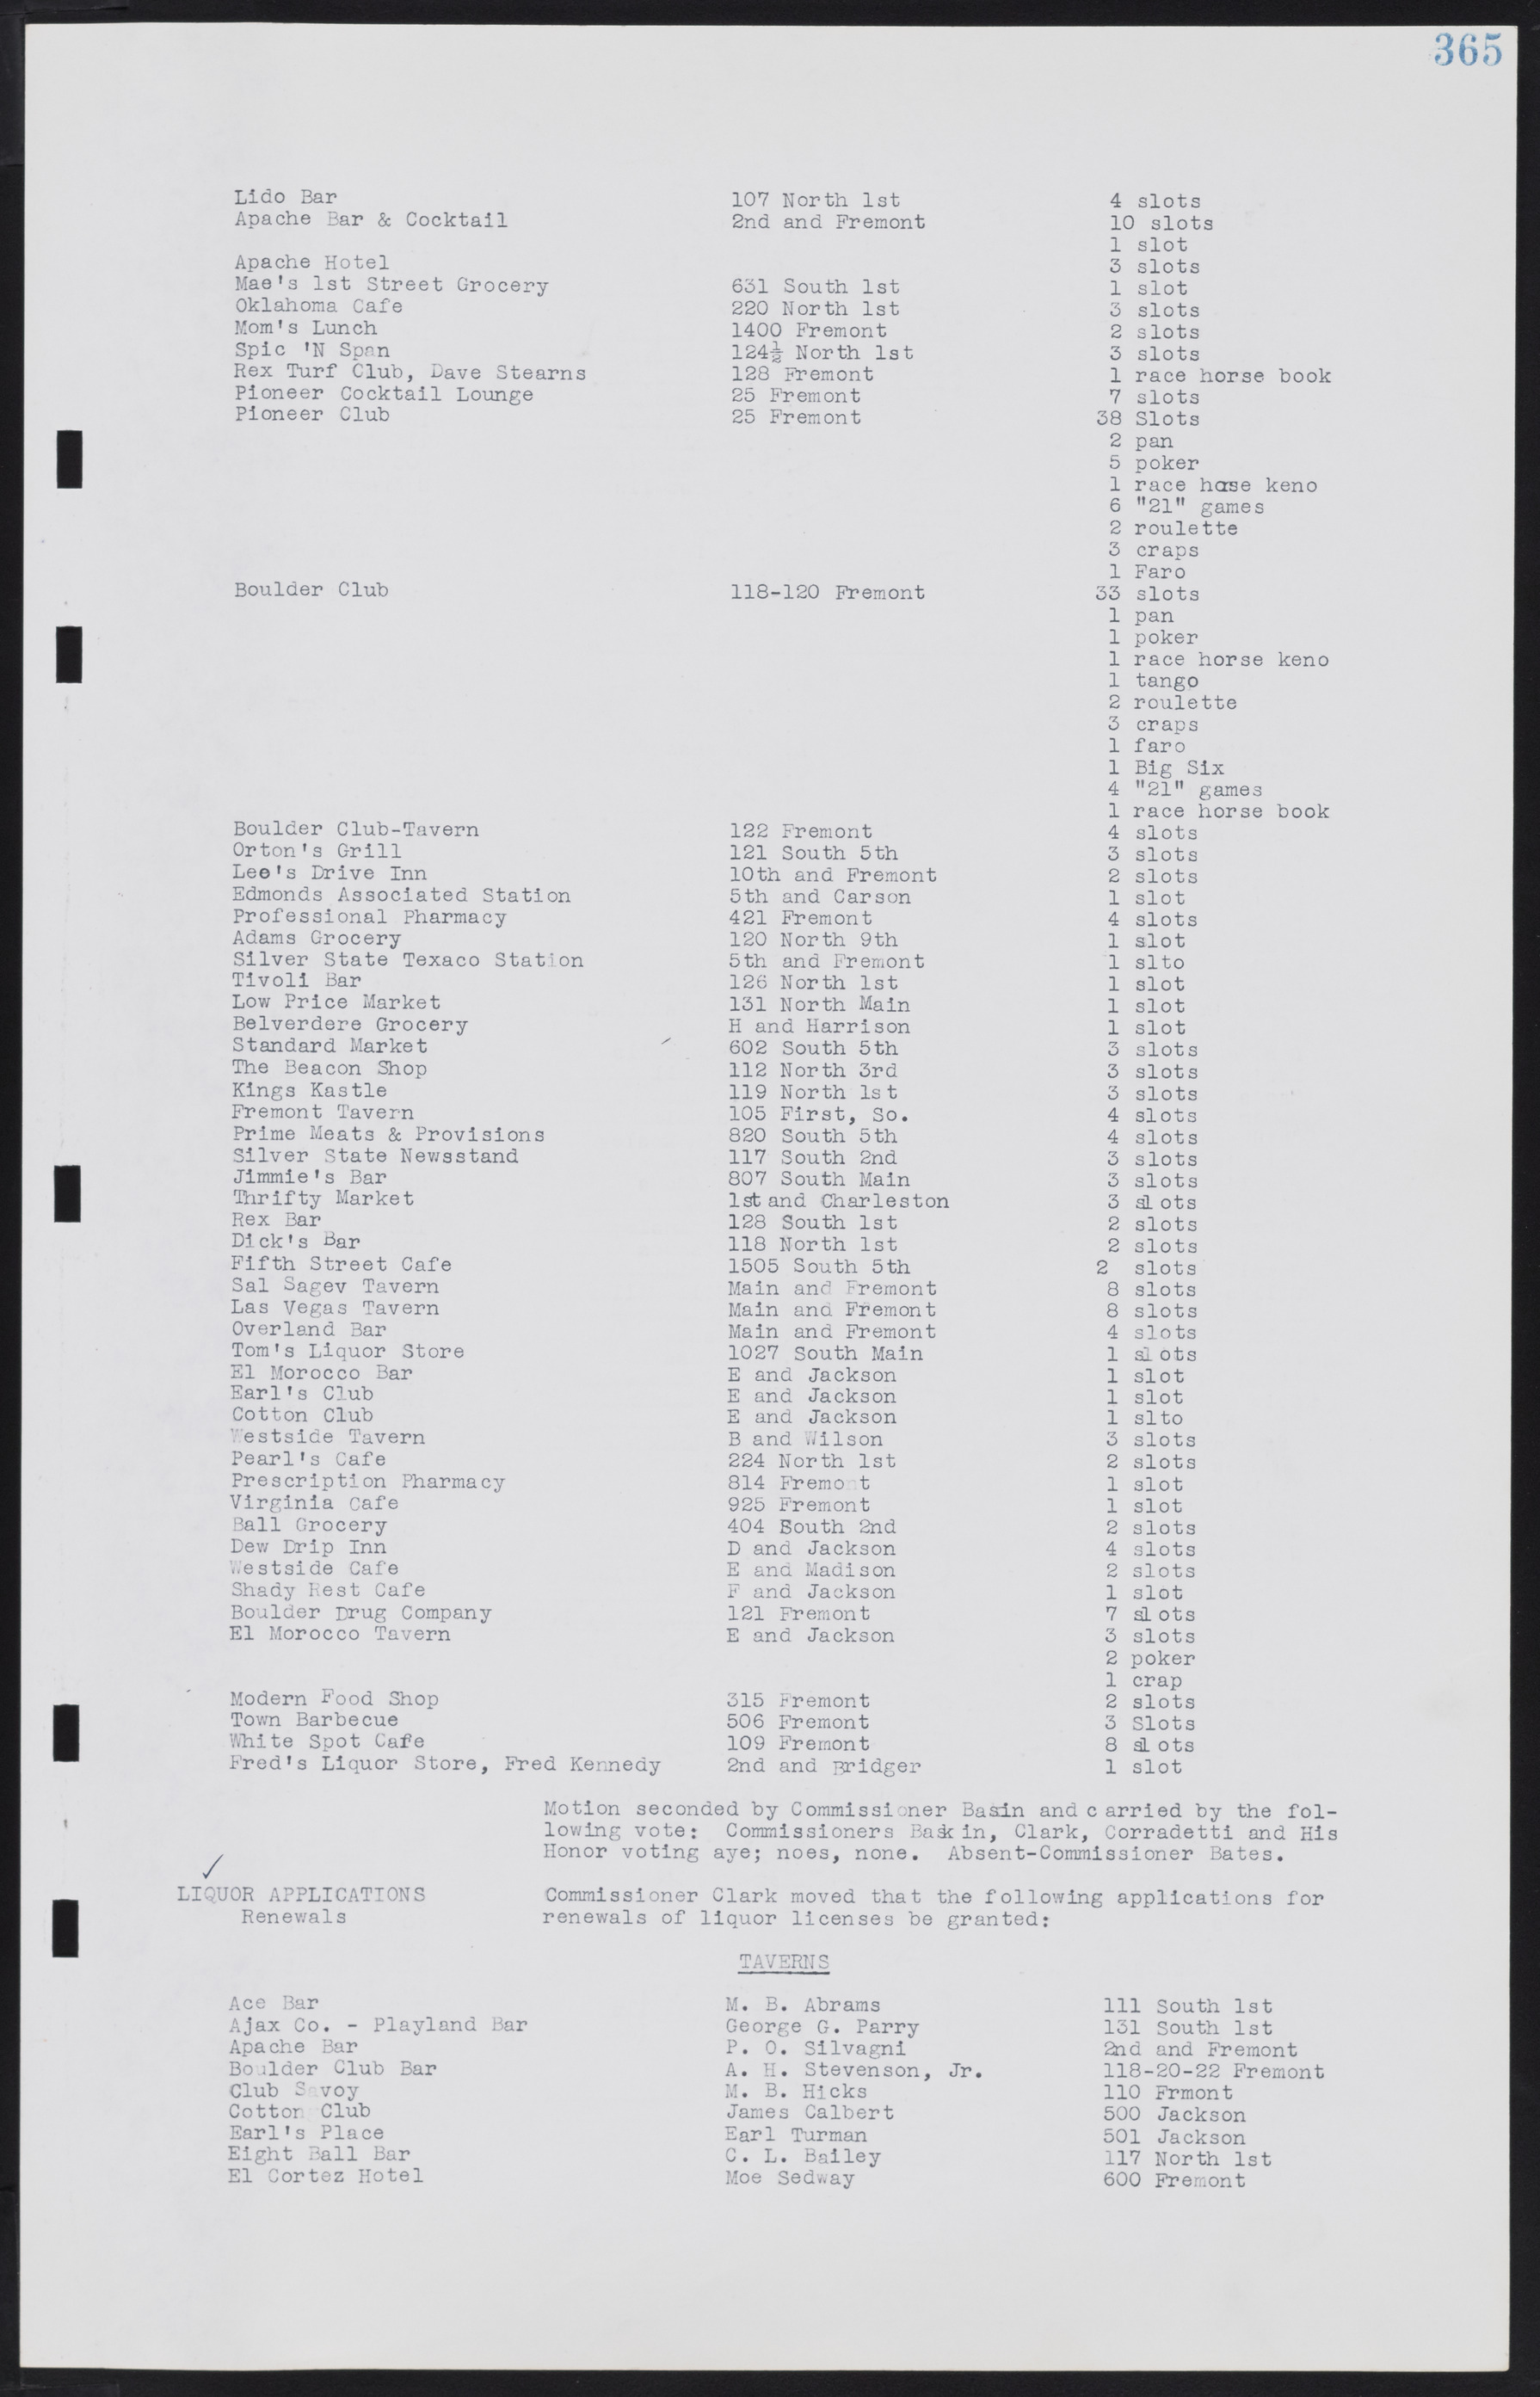 Las Vegas City Commission Minutes, August 11, 1942 to December 30, 1946, lvc000005-390